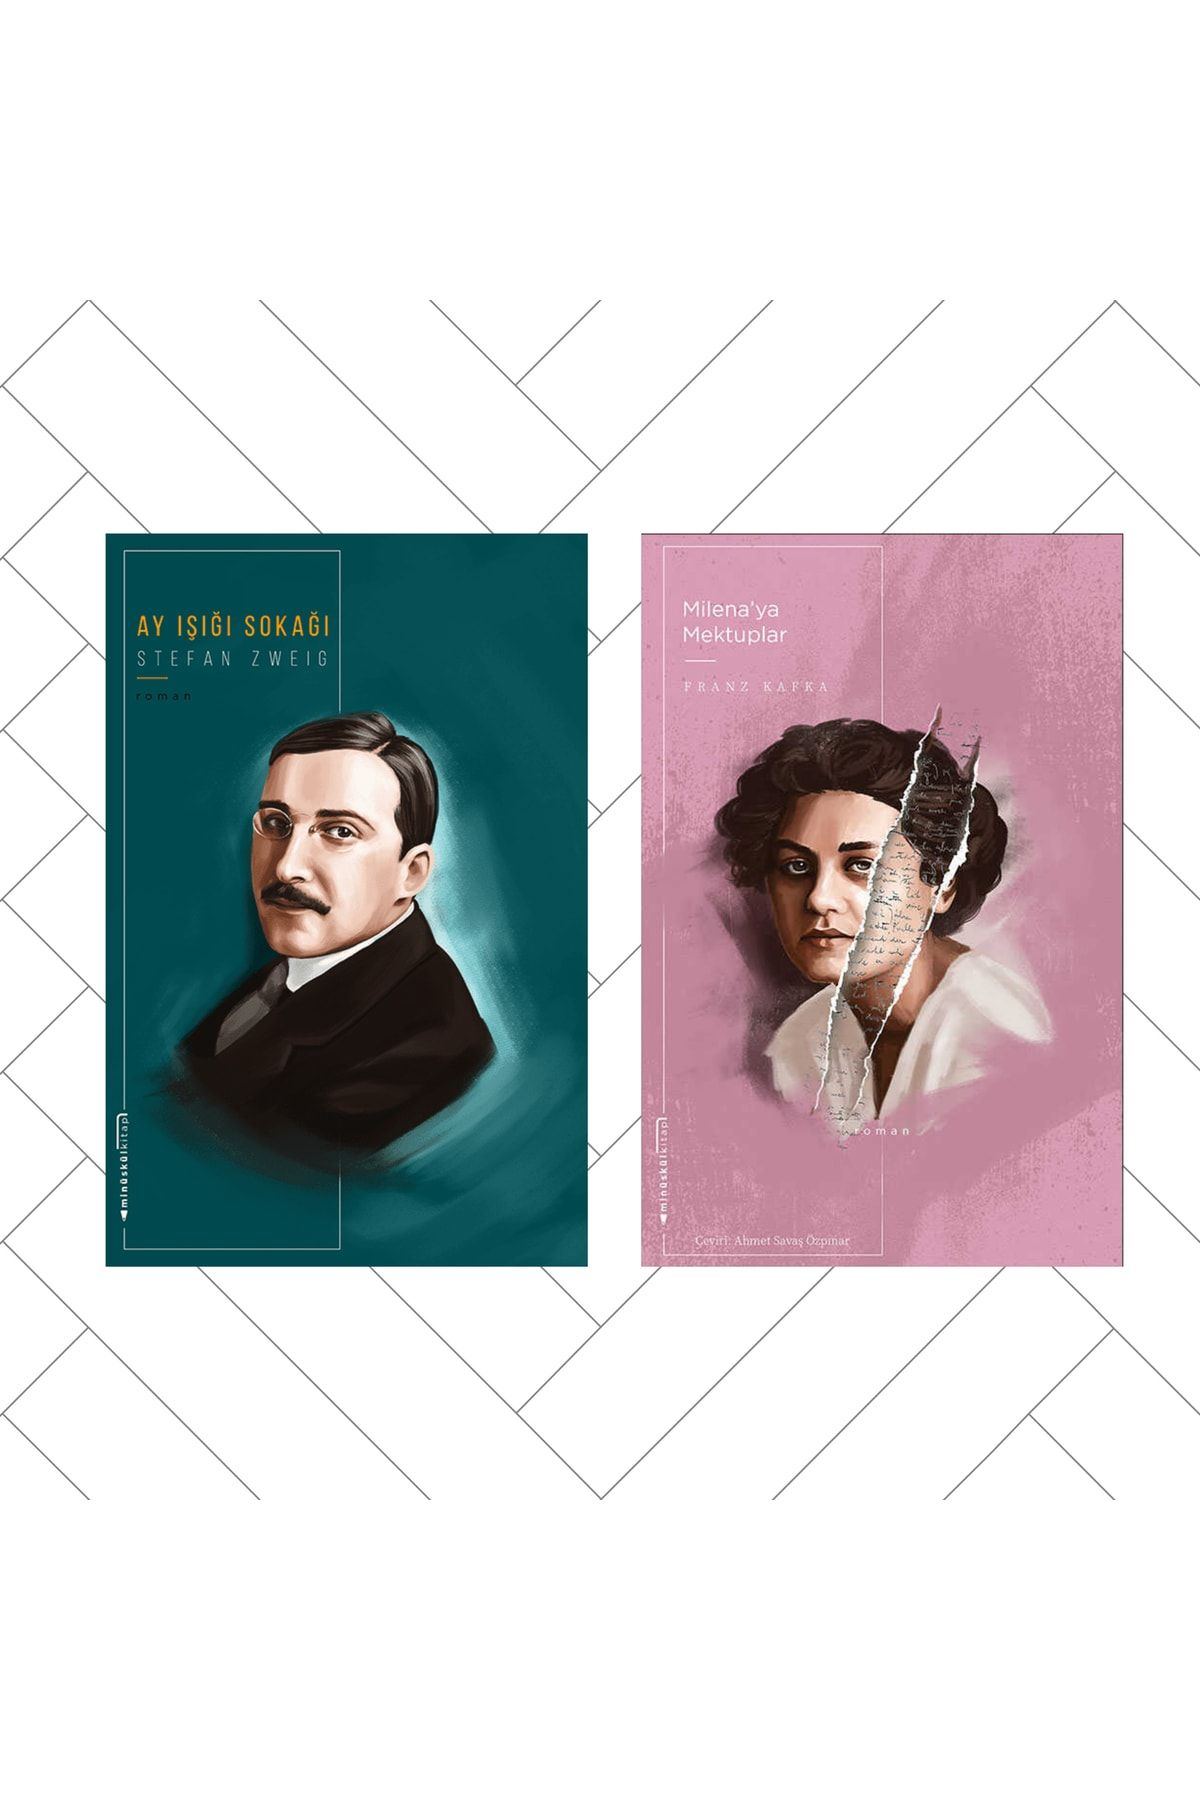 Minüskülkitap 2 Kitap / Milena'ya Mektuplar - Franz Kafka / Ayışığı Sokağı - Stefan Zweig